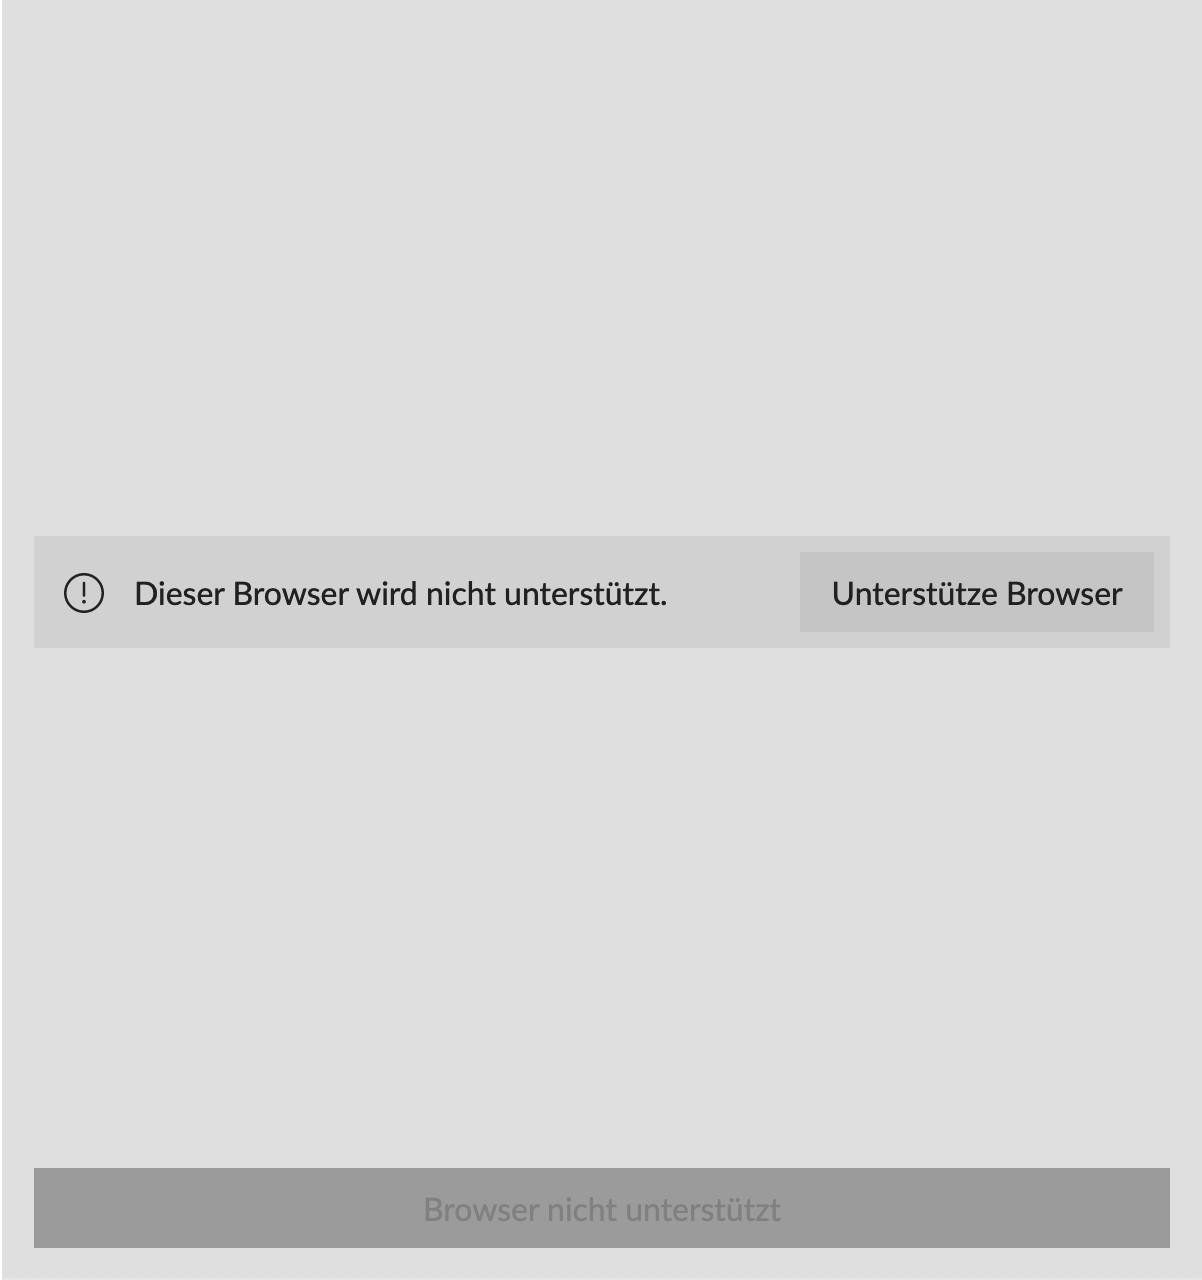 Browser nicht unterstützt